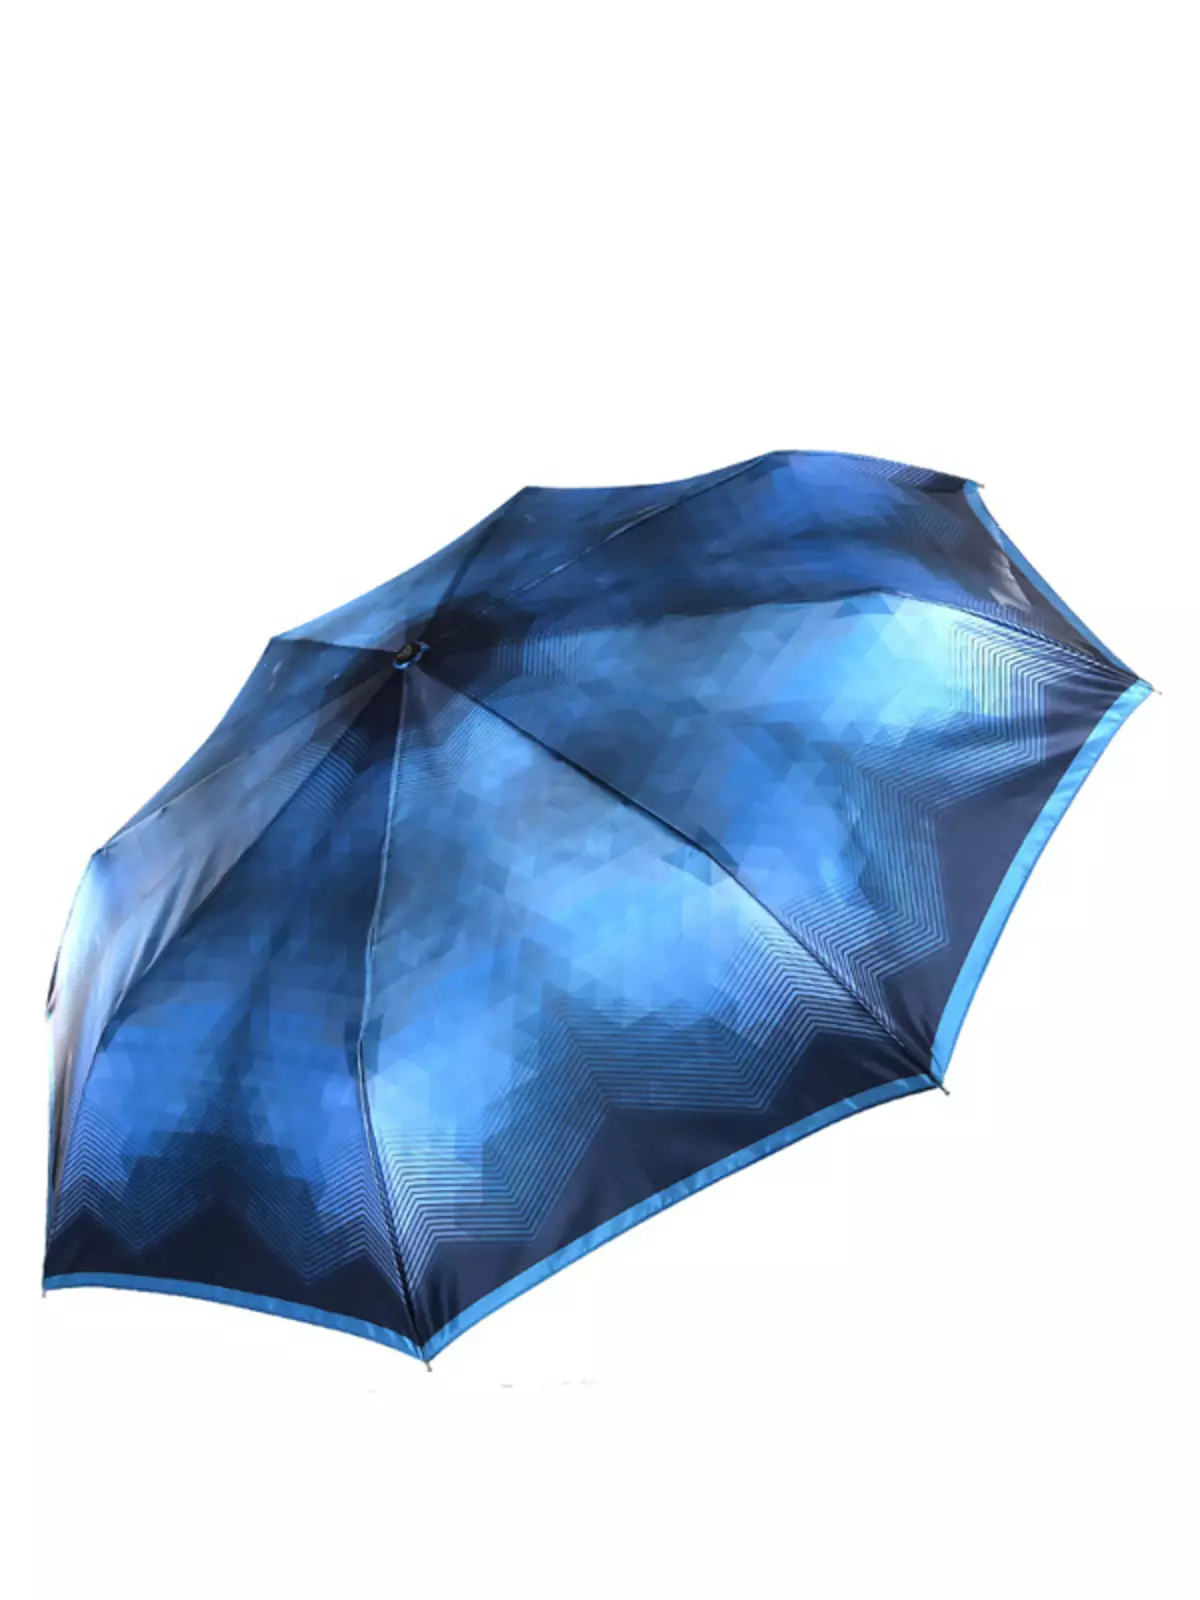 Sunbrella (linepe tse 72): Basali ba bopalai ba purwork upbrella-cane 15238_36